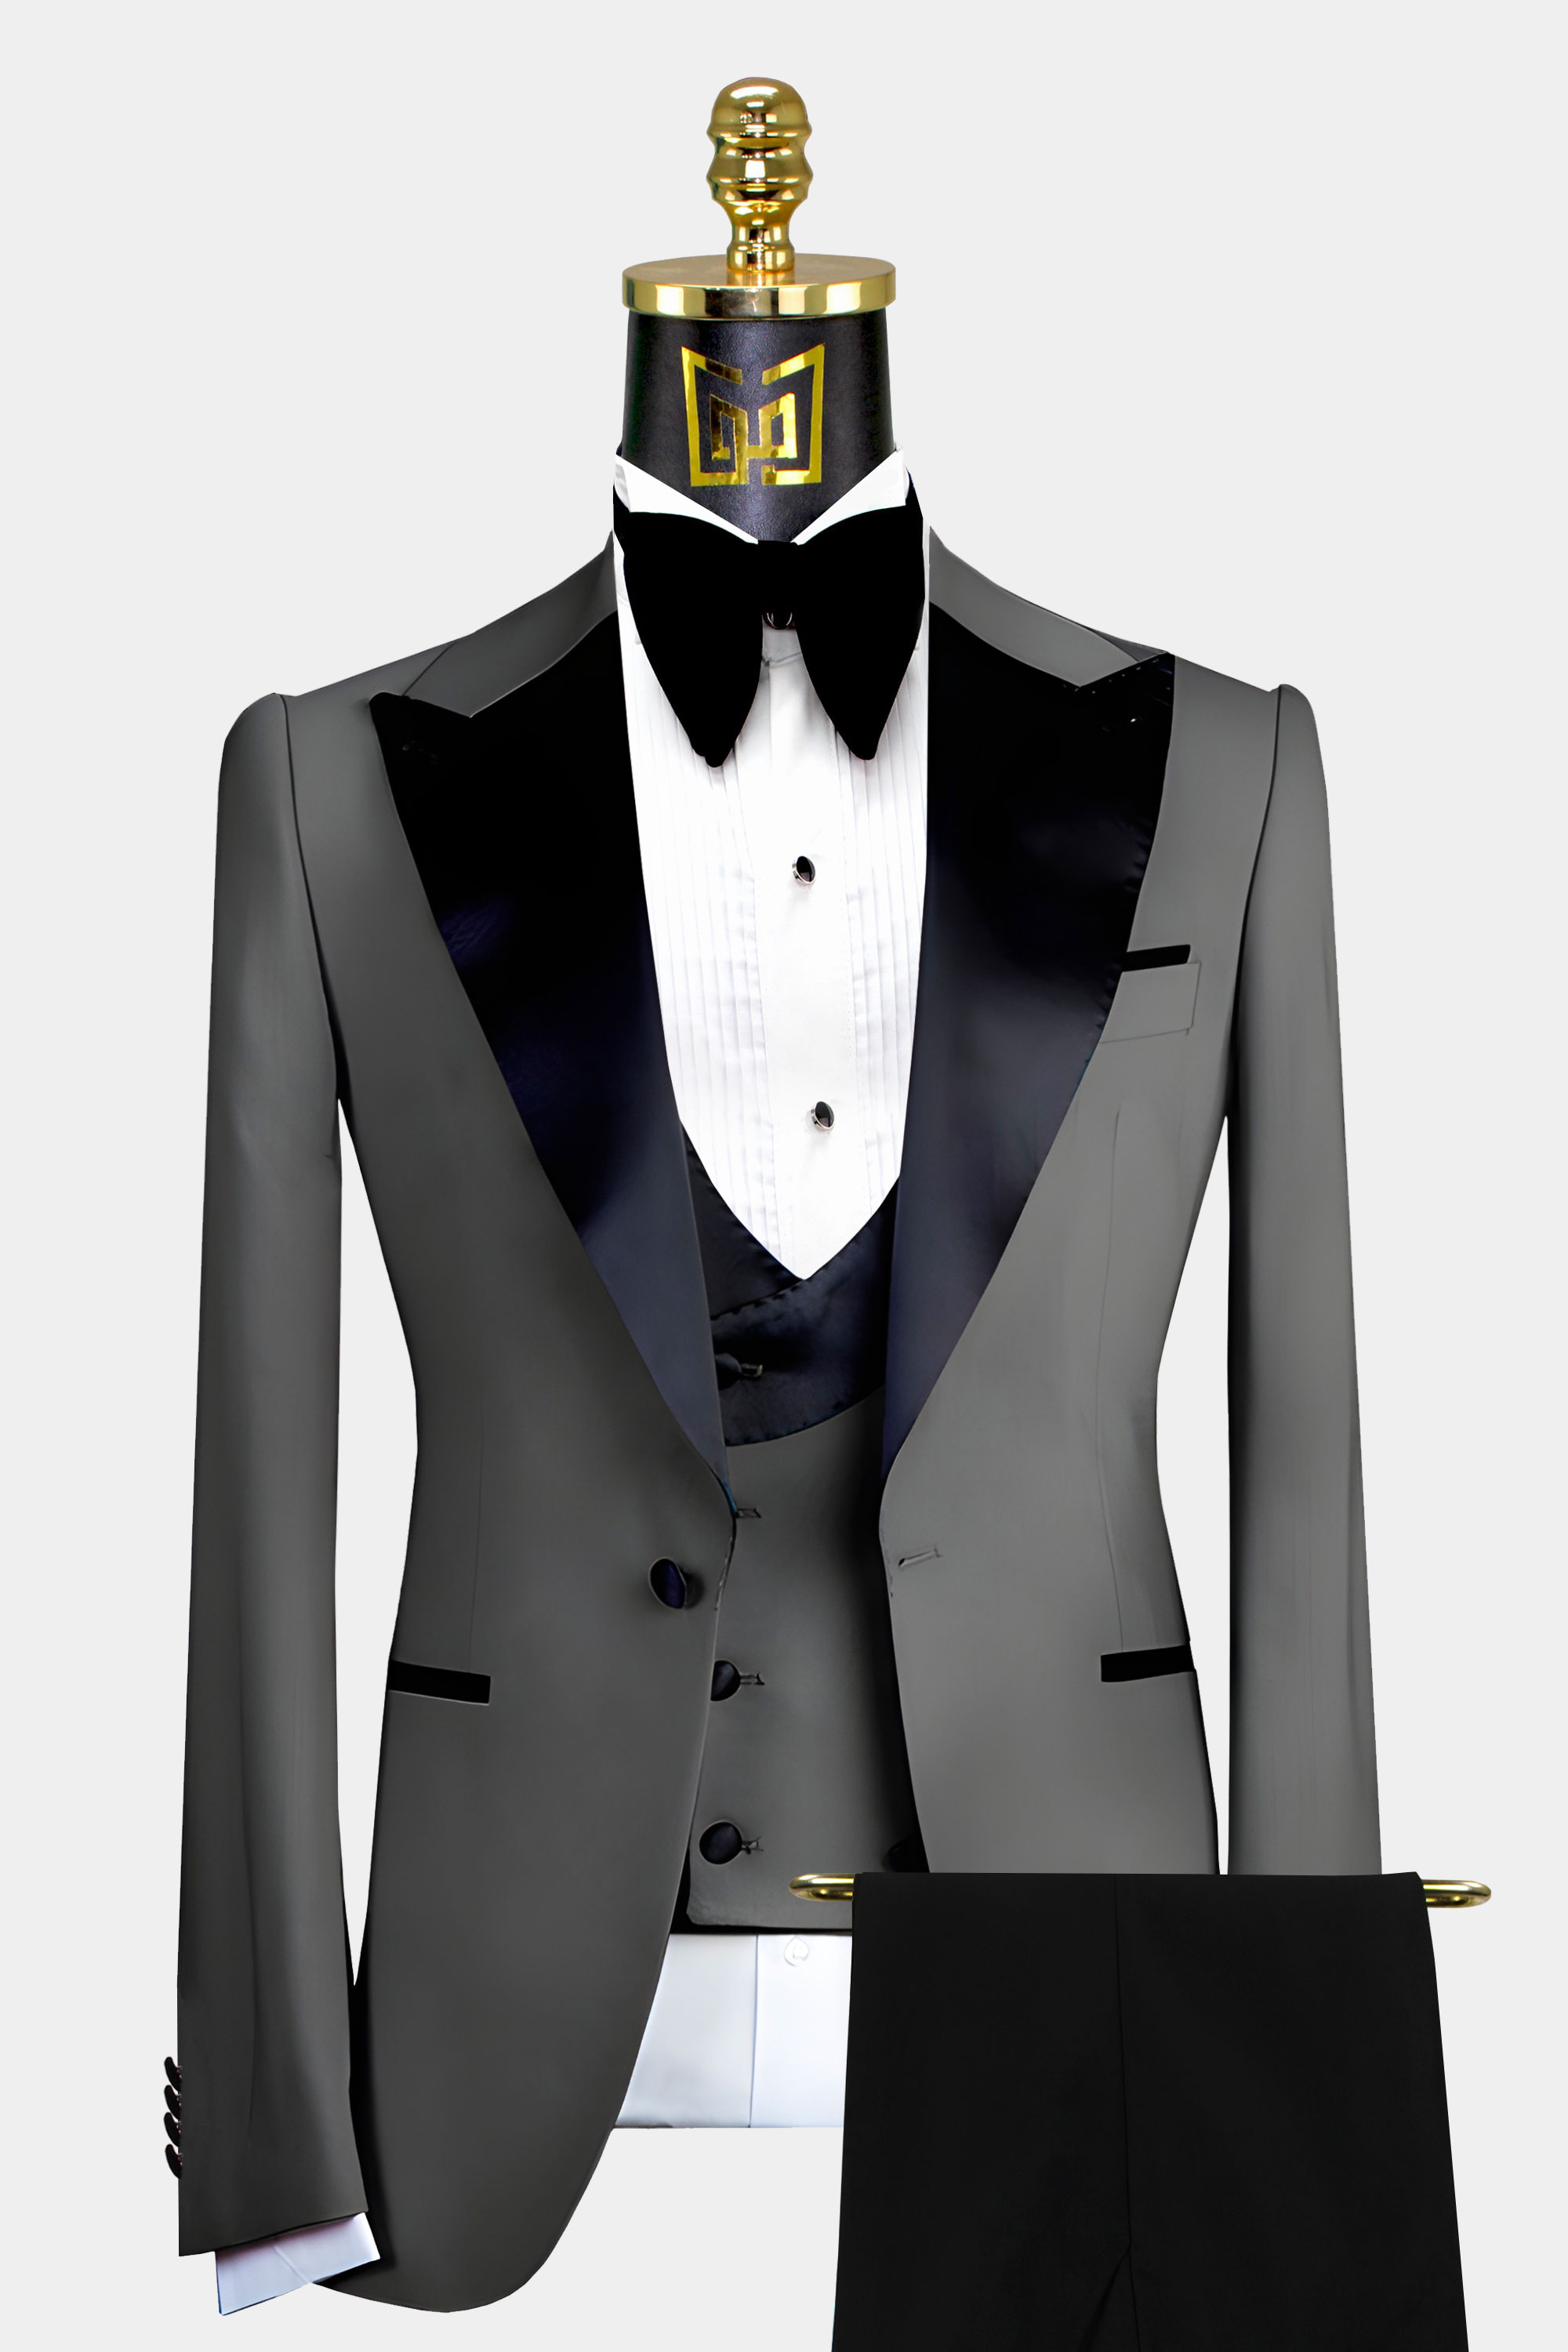 Light Grey Peak Lapel 3-piece Suit Sophisticated Men's Business